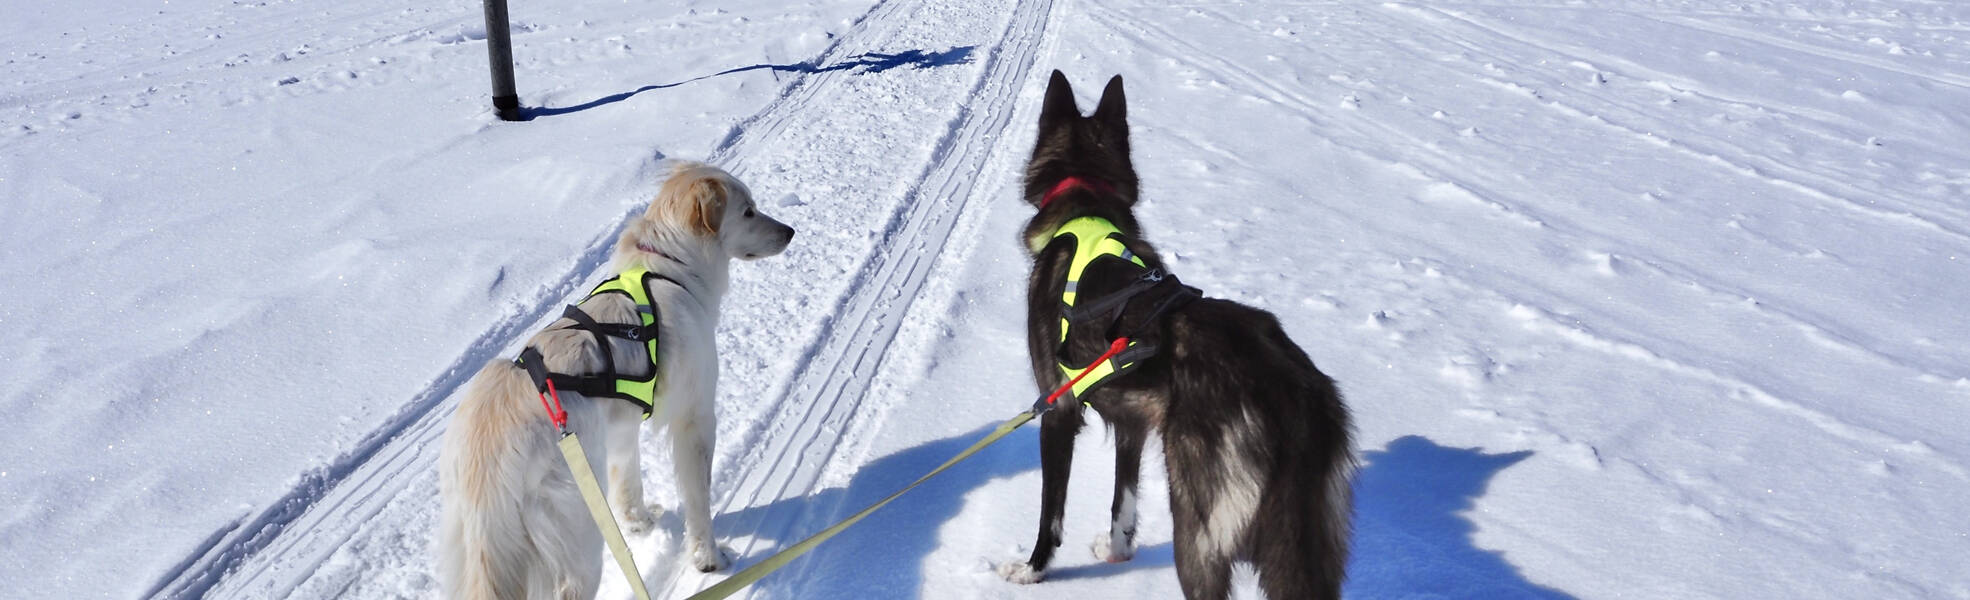 Freiwilligenarbeit mit Huskys in Schwedisch Lappland